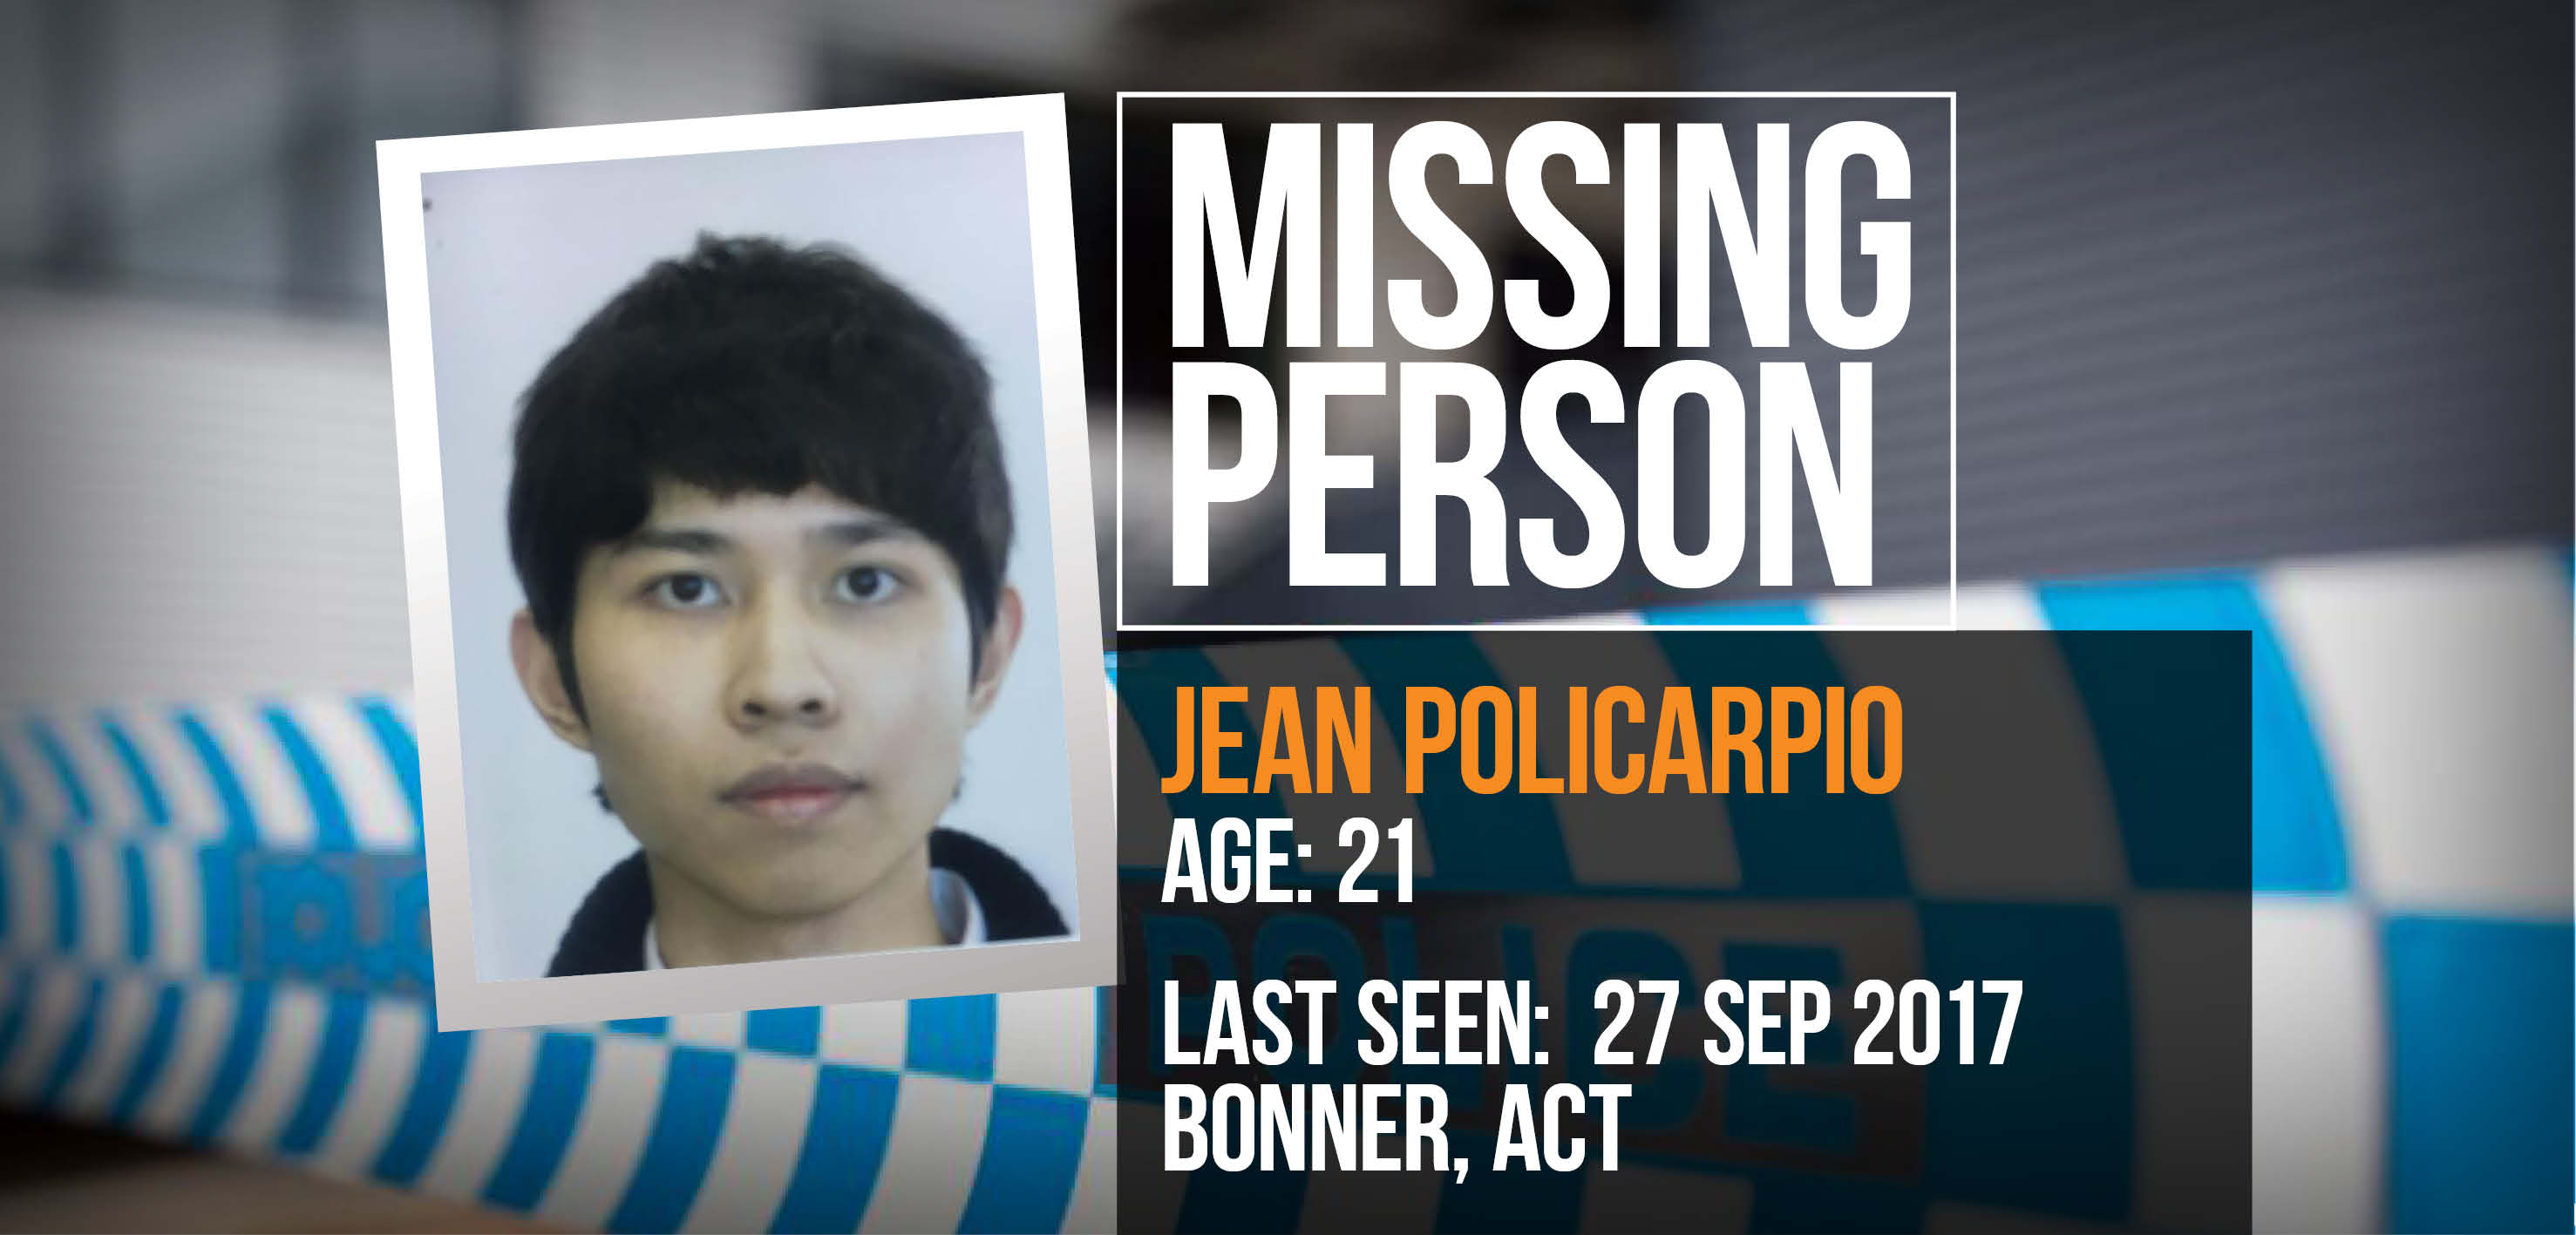 Have you seen Jean Policarpio?